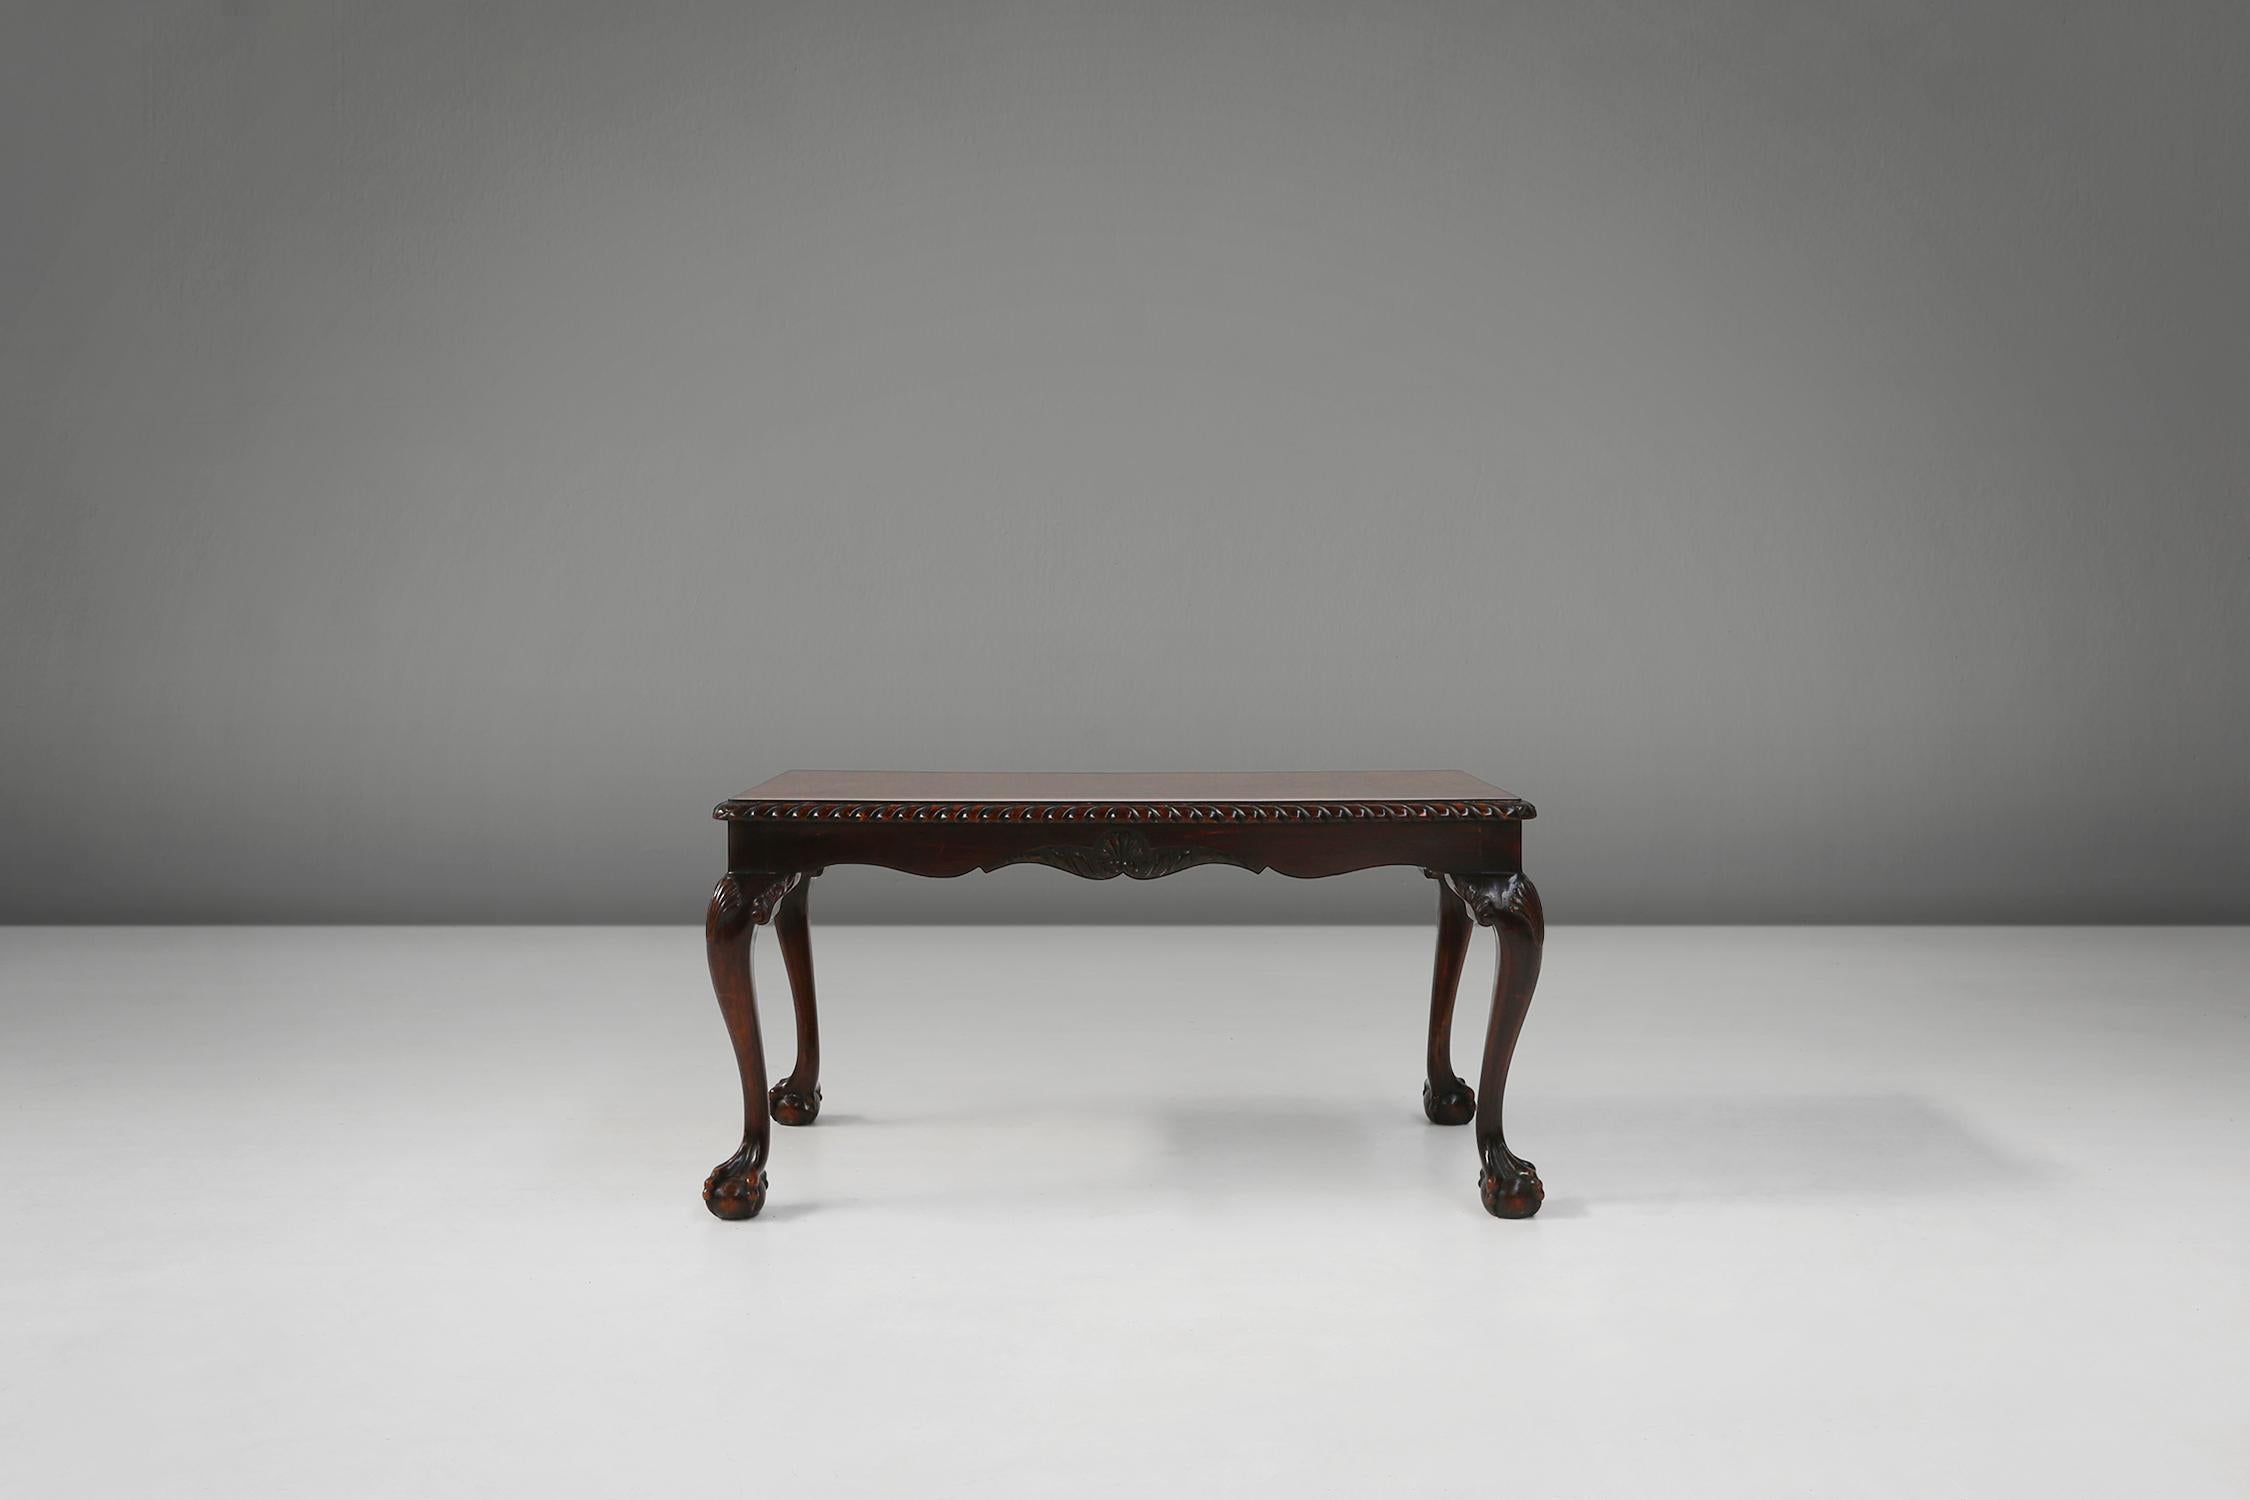 Cette table basse est un chef-d'œuvre d'artisanat traditionnel et de design intemporel, fabriqué en France au XIXe siècle.

Le plateau de la table est en bois riche et chaud avec un magnifique placage en bois de ronce qui offre une surface durable